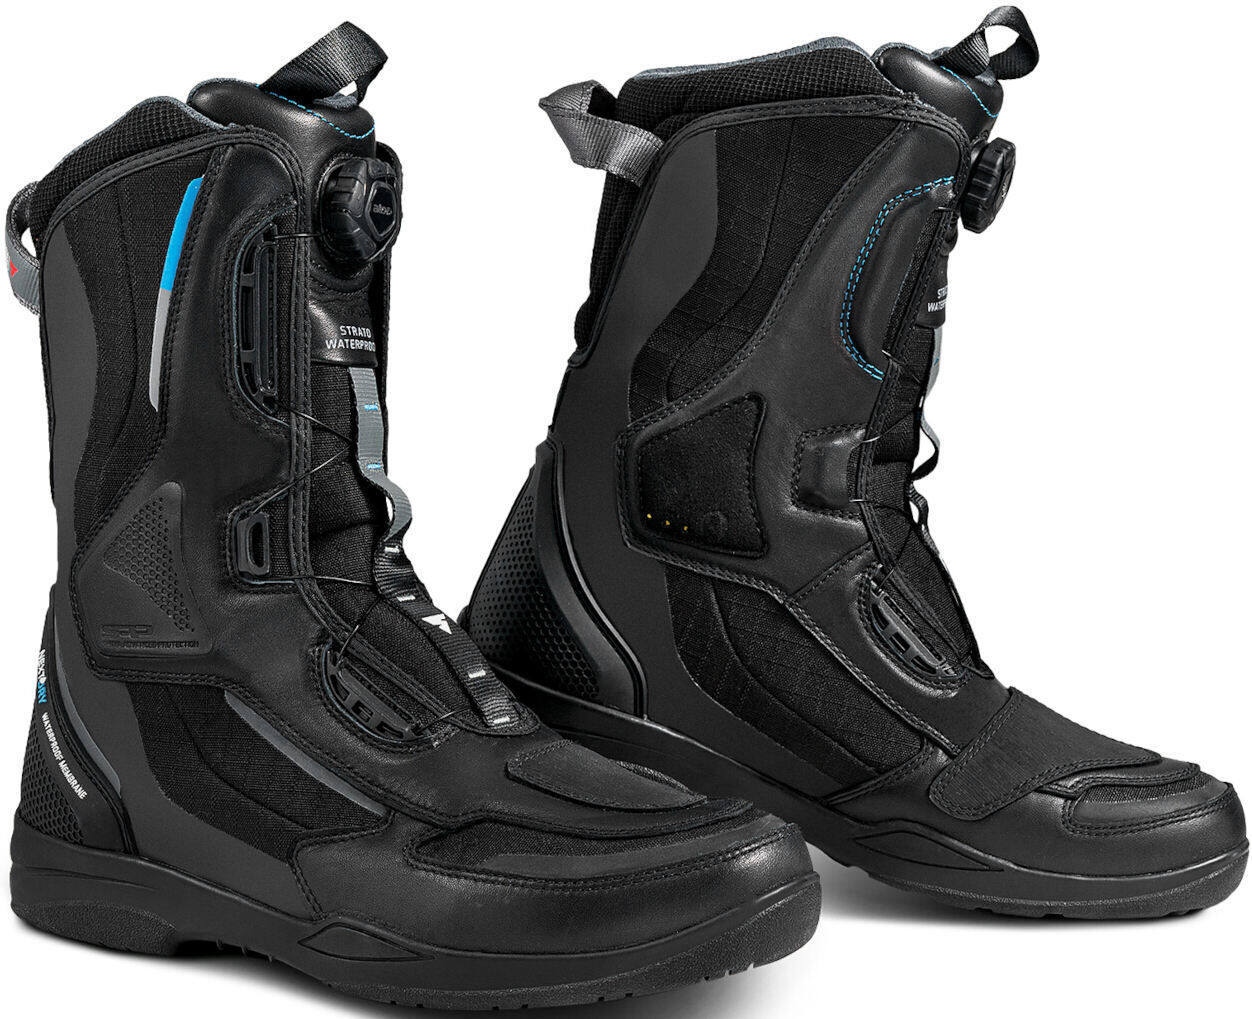 SHIMA Strato botas de moto impermeables para mujer - Negro (41)